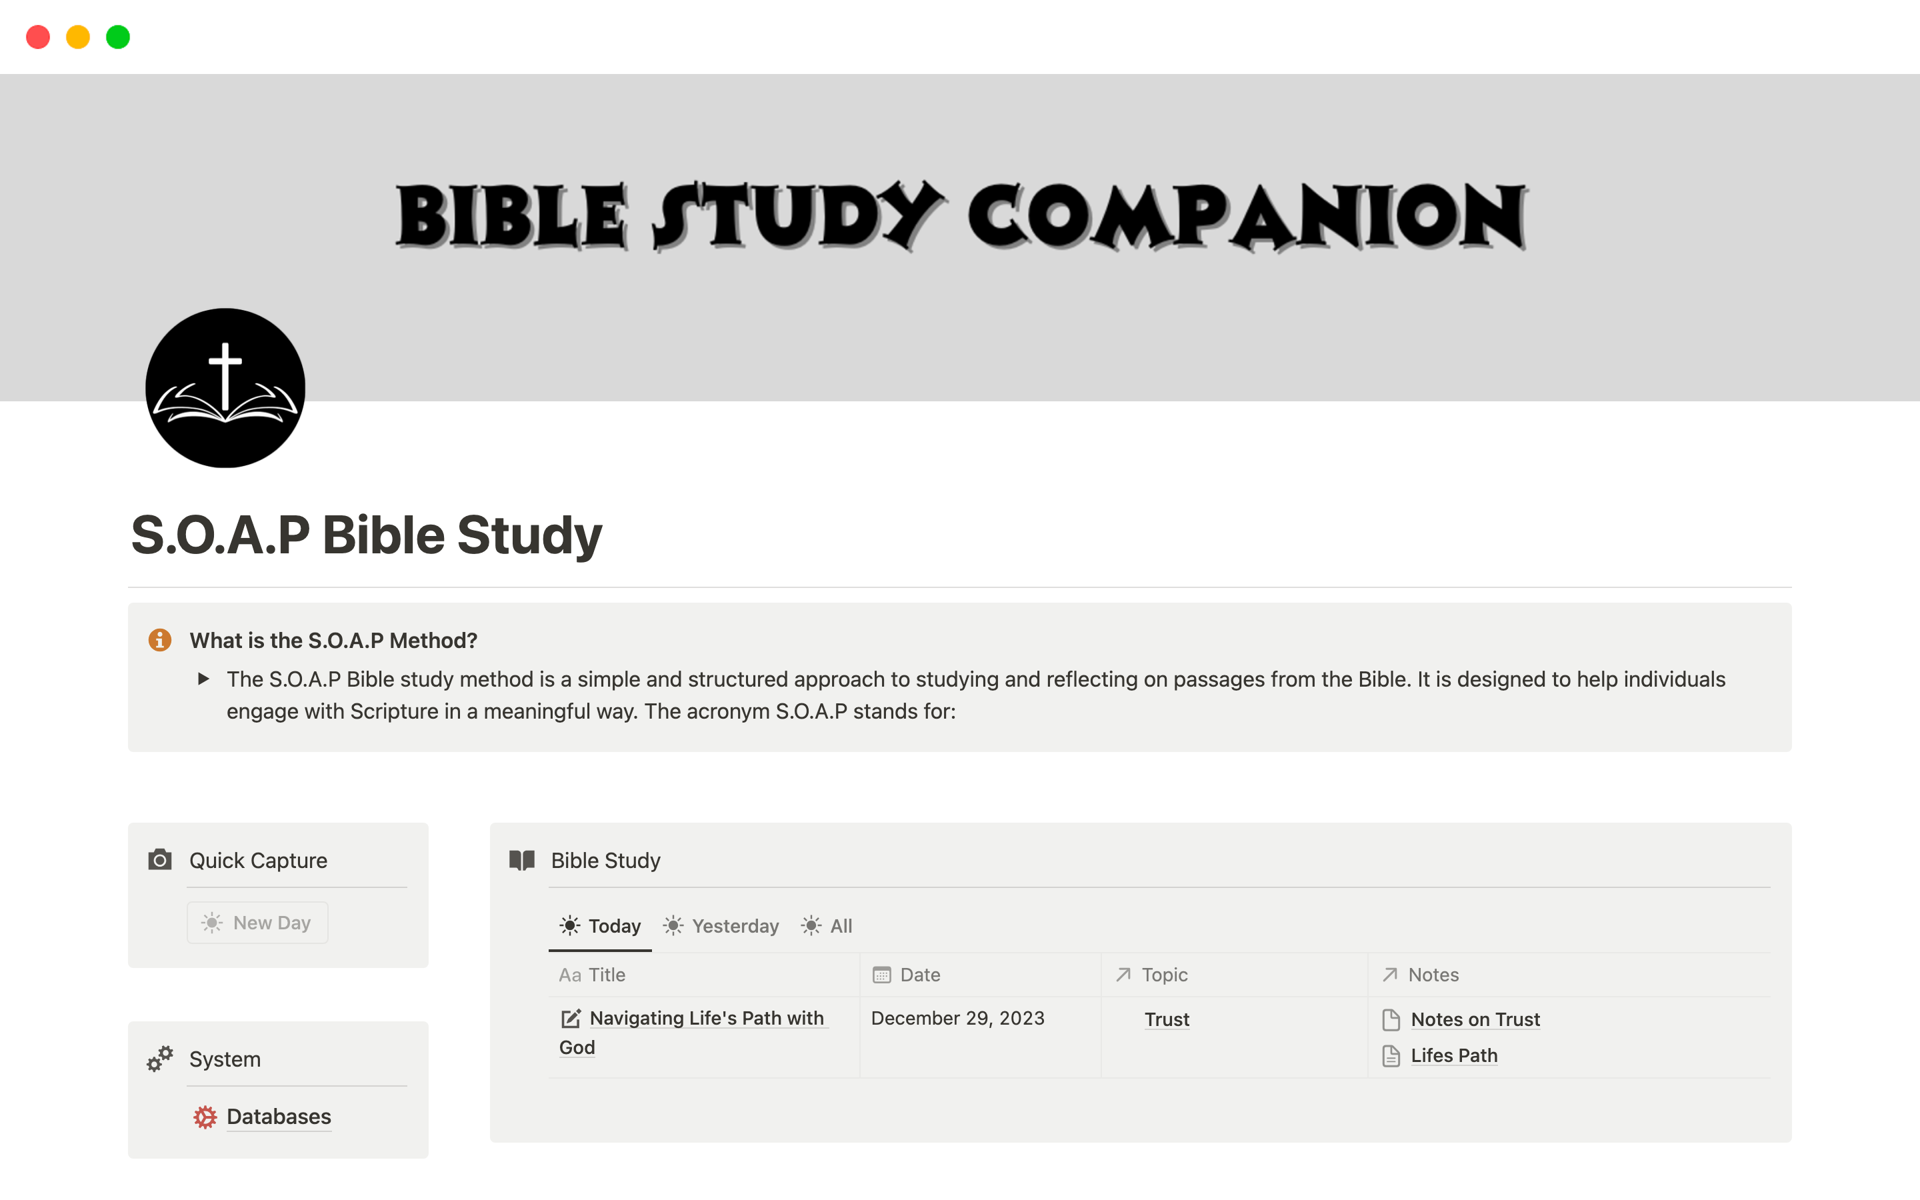 Vista previa de una plantilla para Bible Study Companion